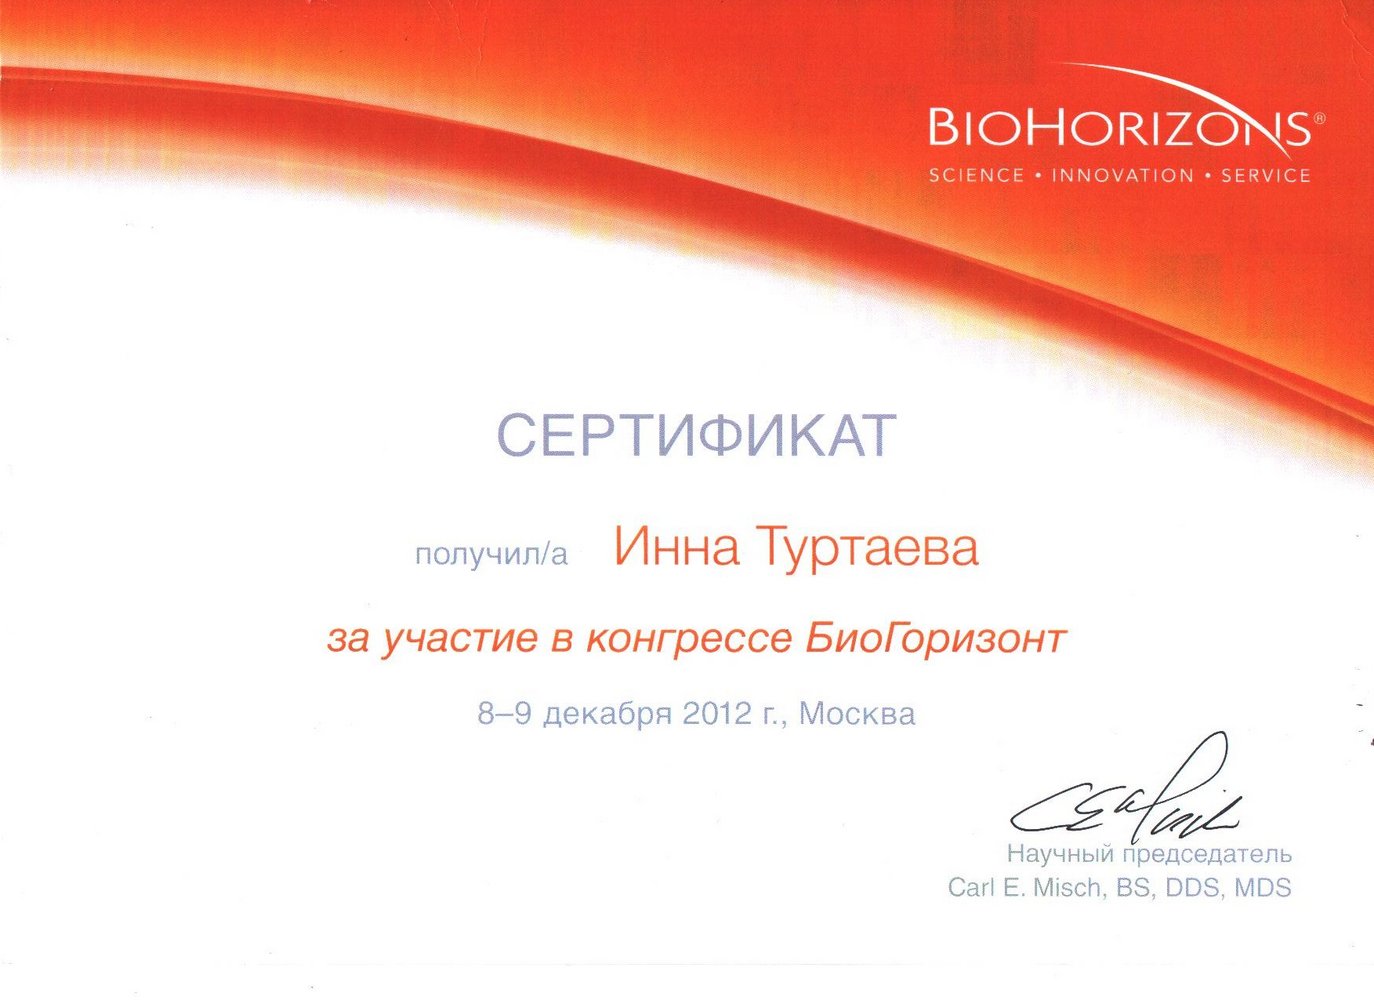 Сертификат участия в конгрессе BioHorizont